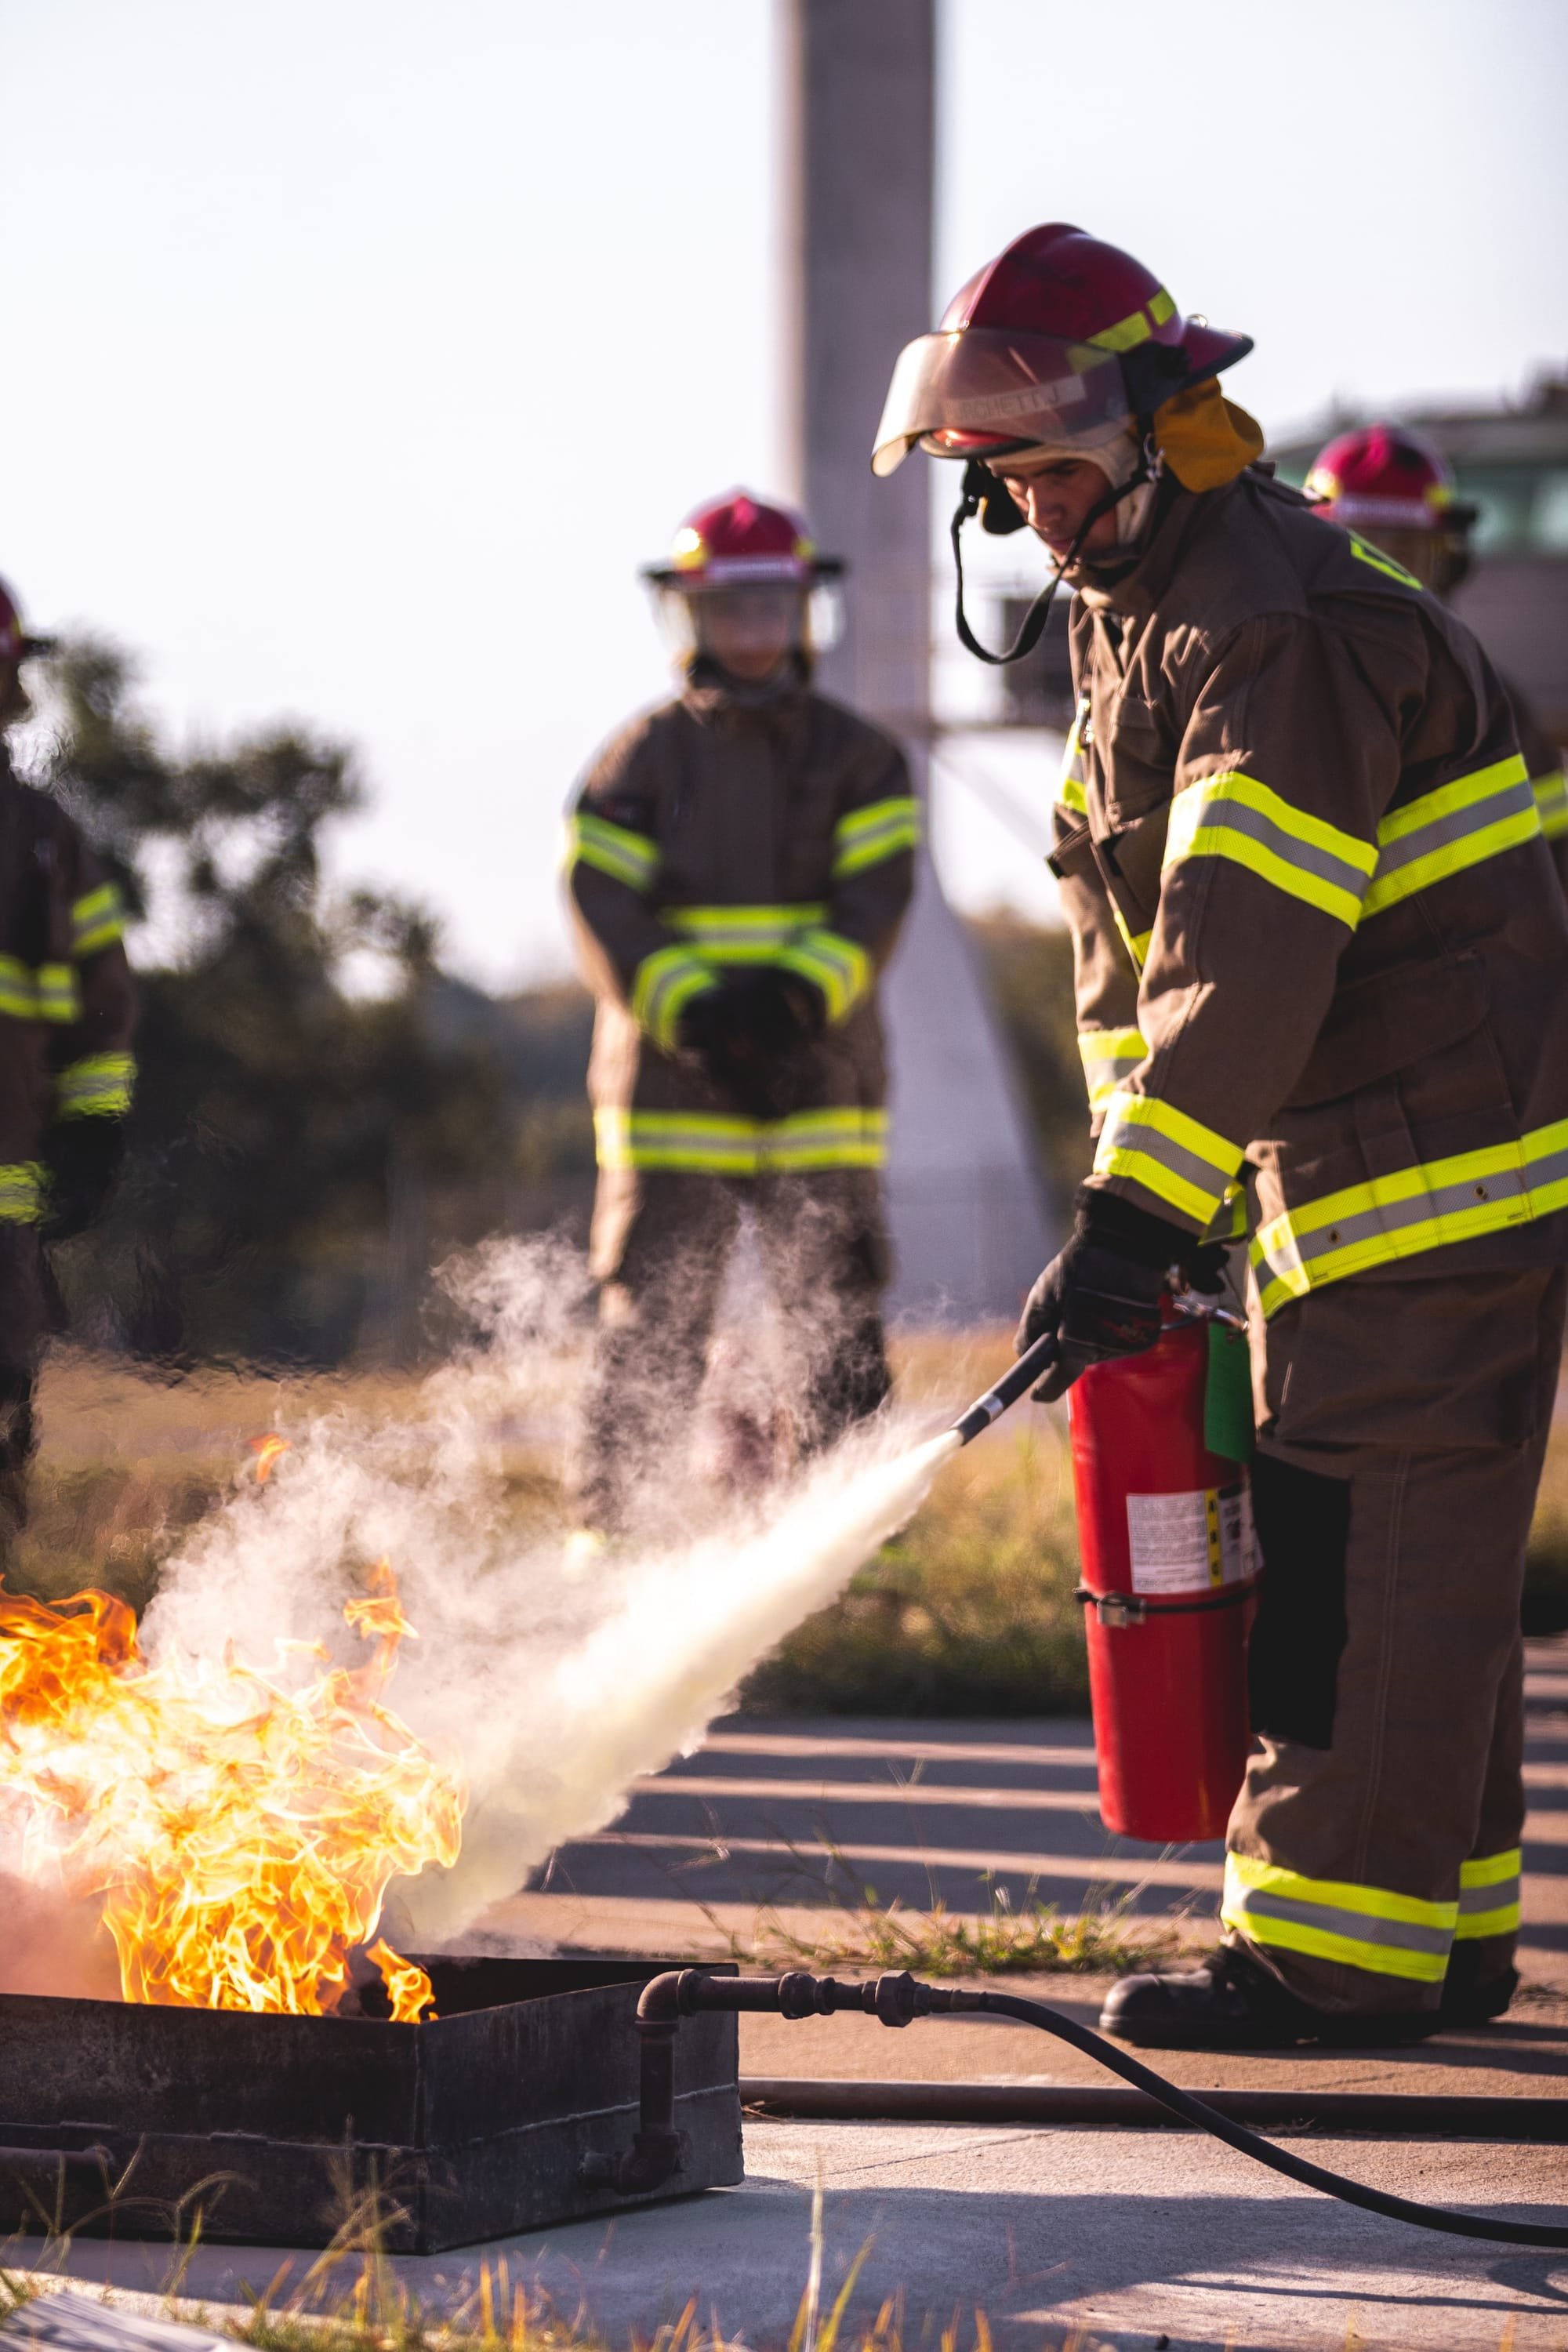 כיבוי אש במקום העבודה: הדרכות, סימולטורים, ואחריות לבטיחות